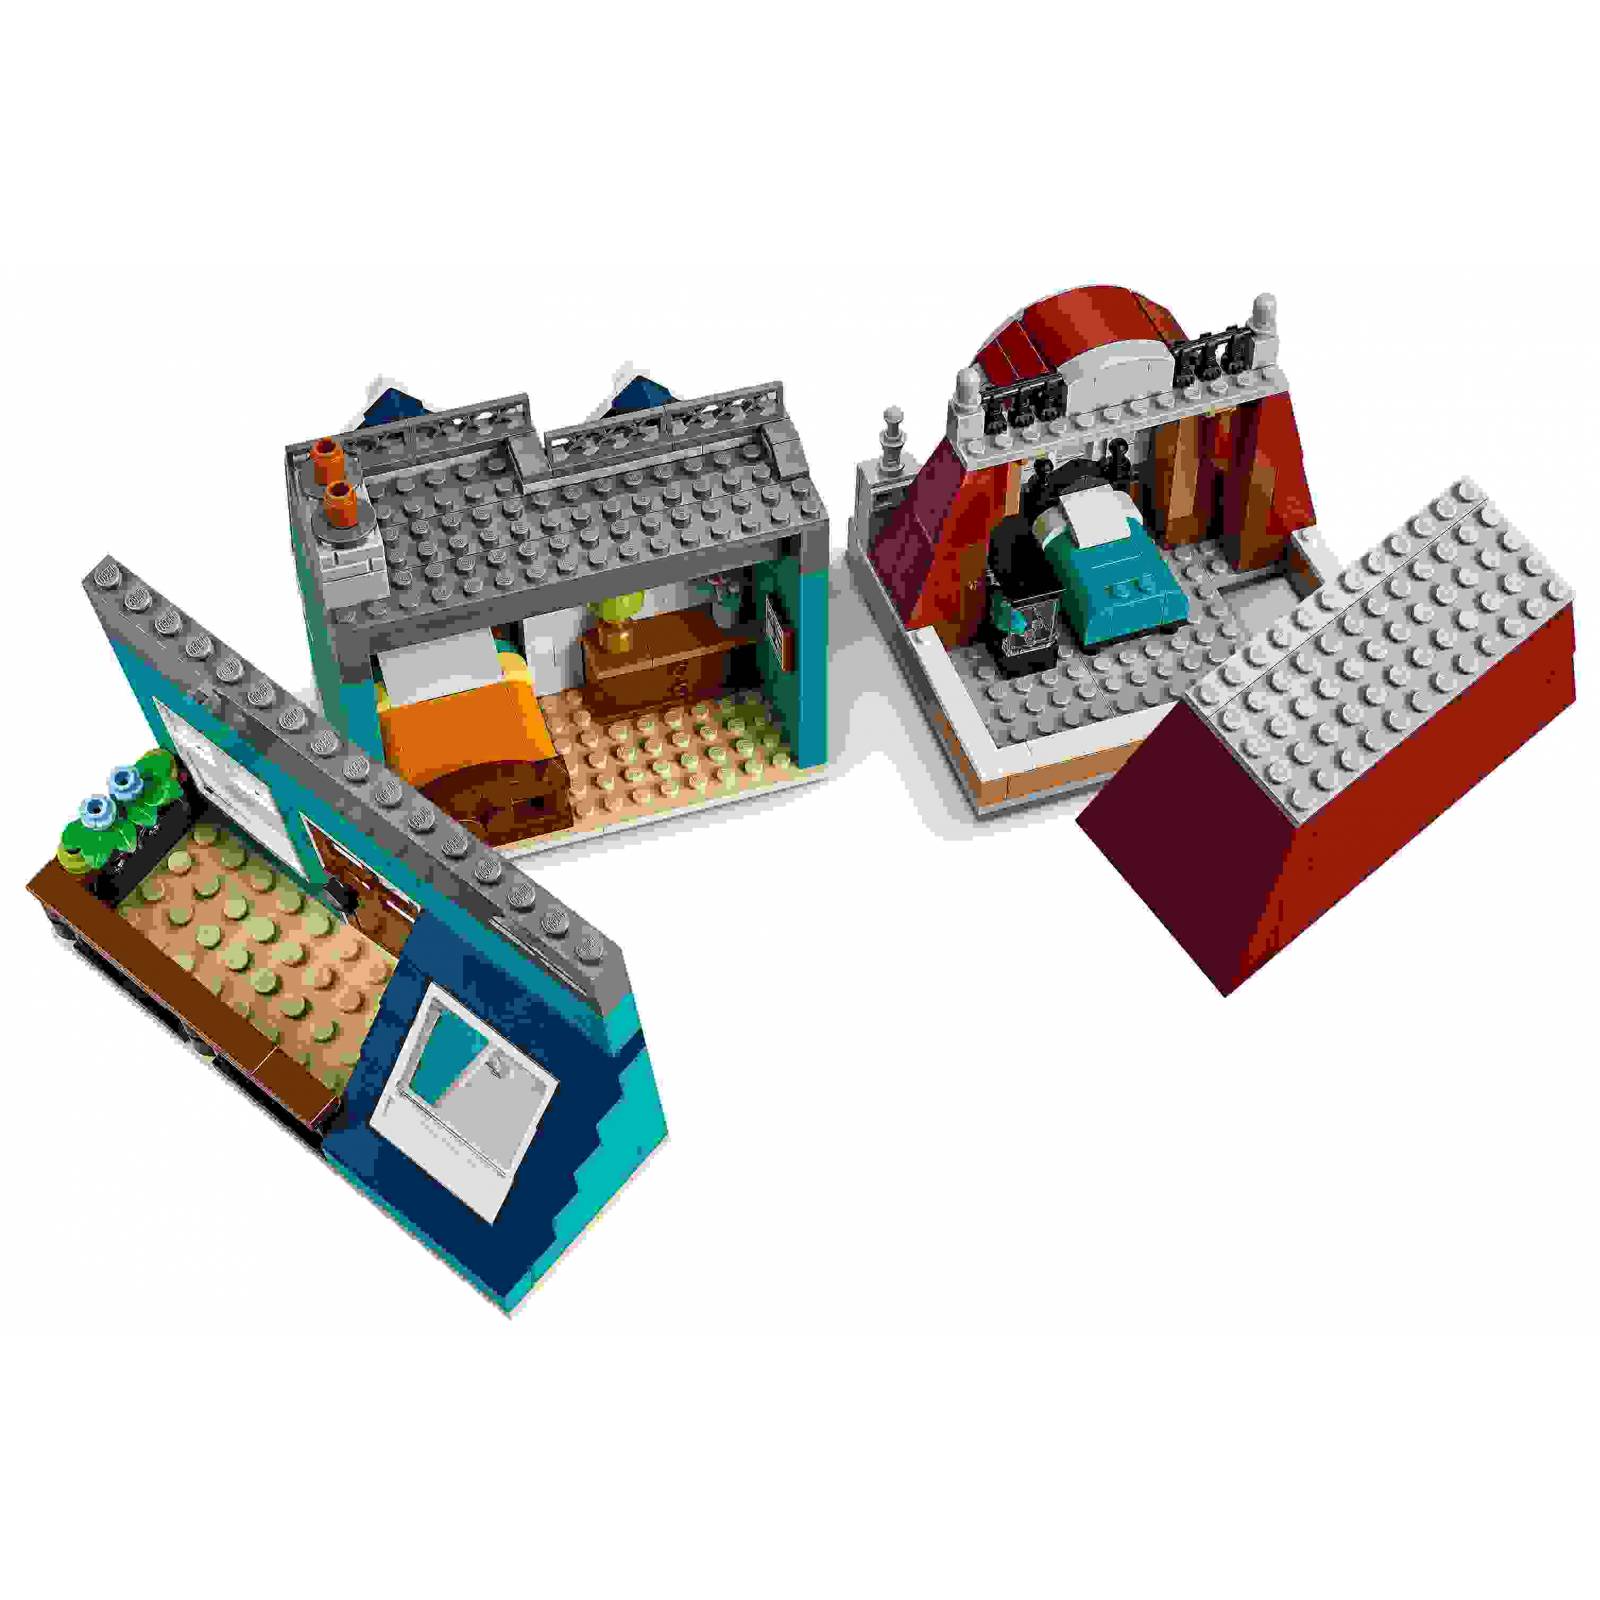 Lego 10270 Librería